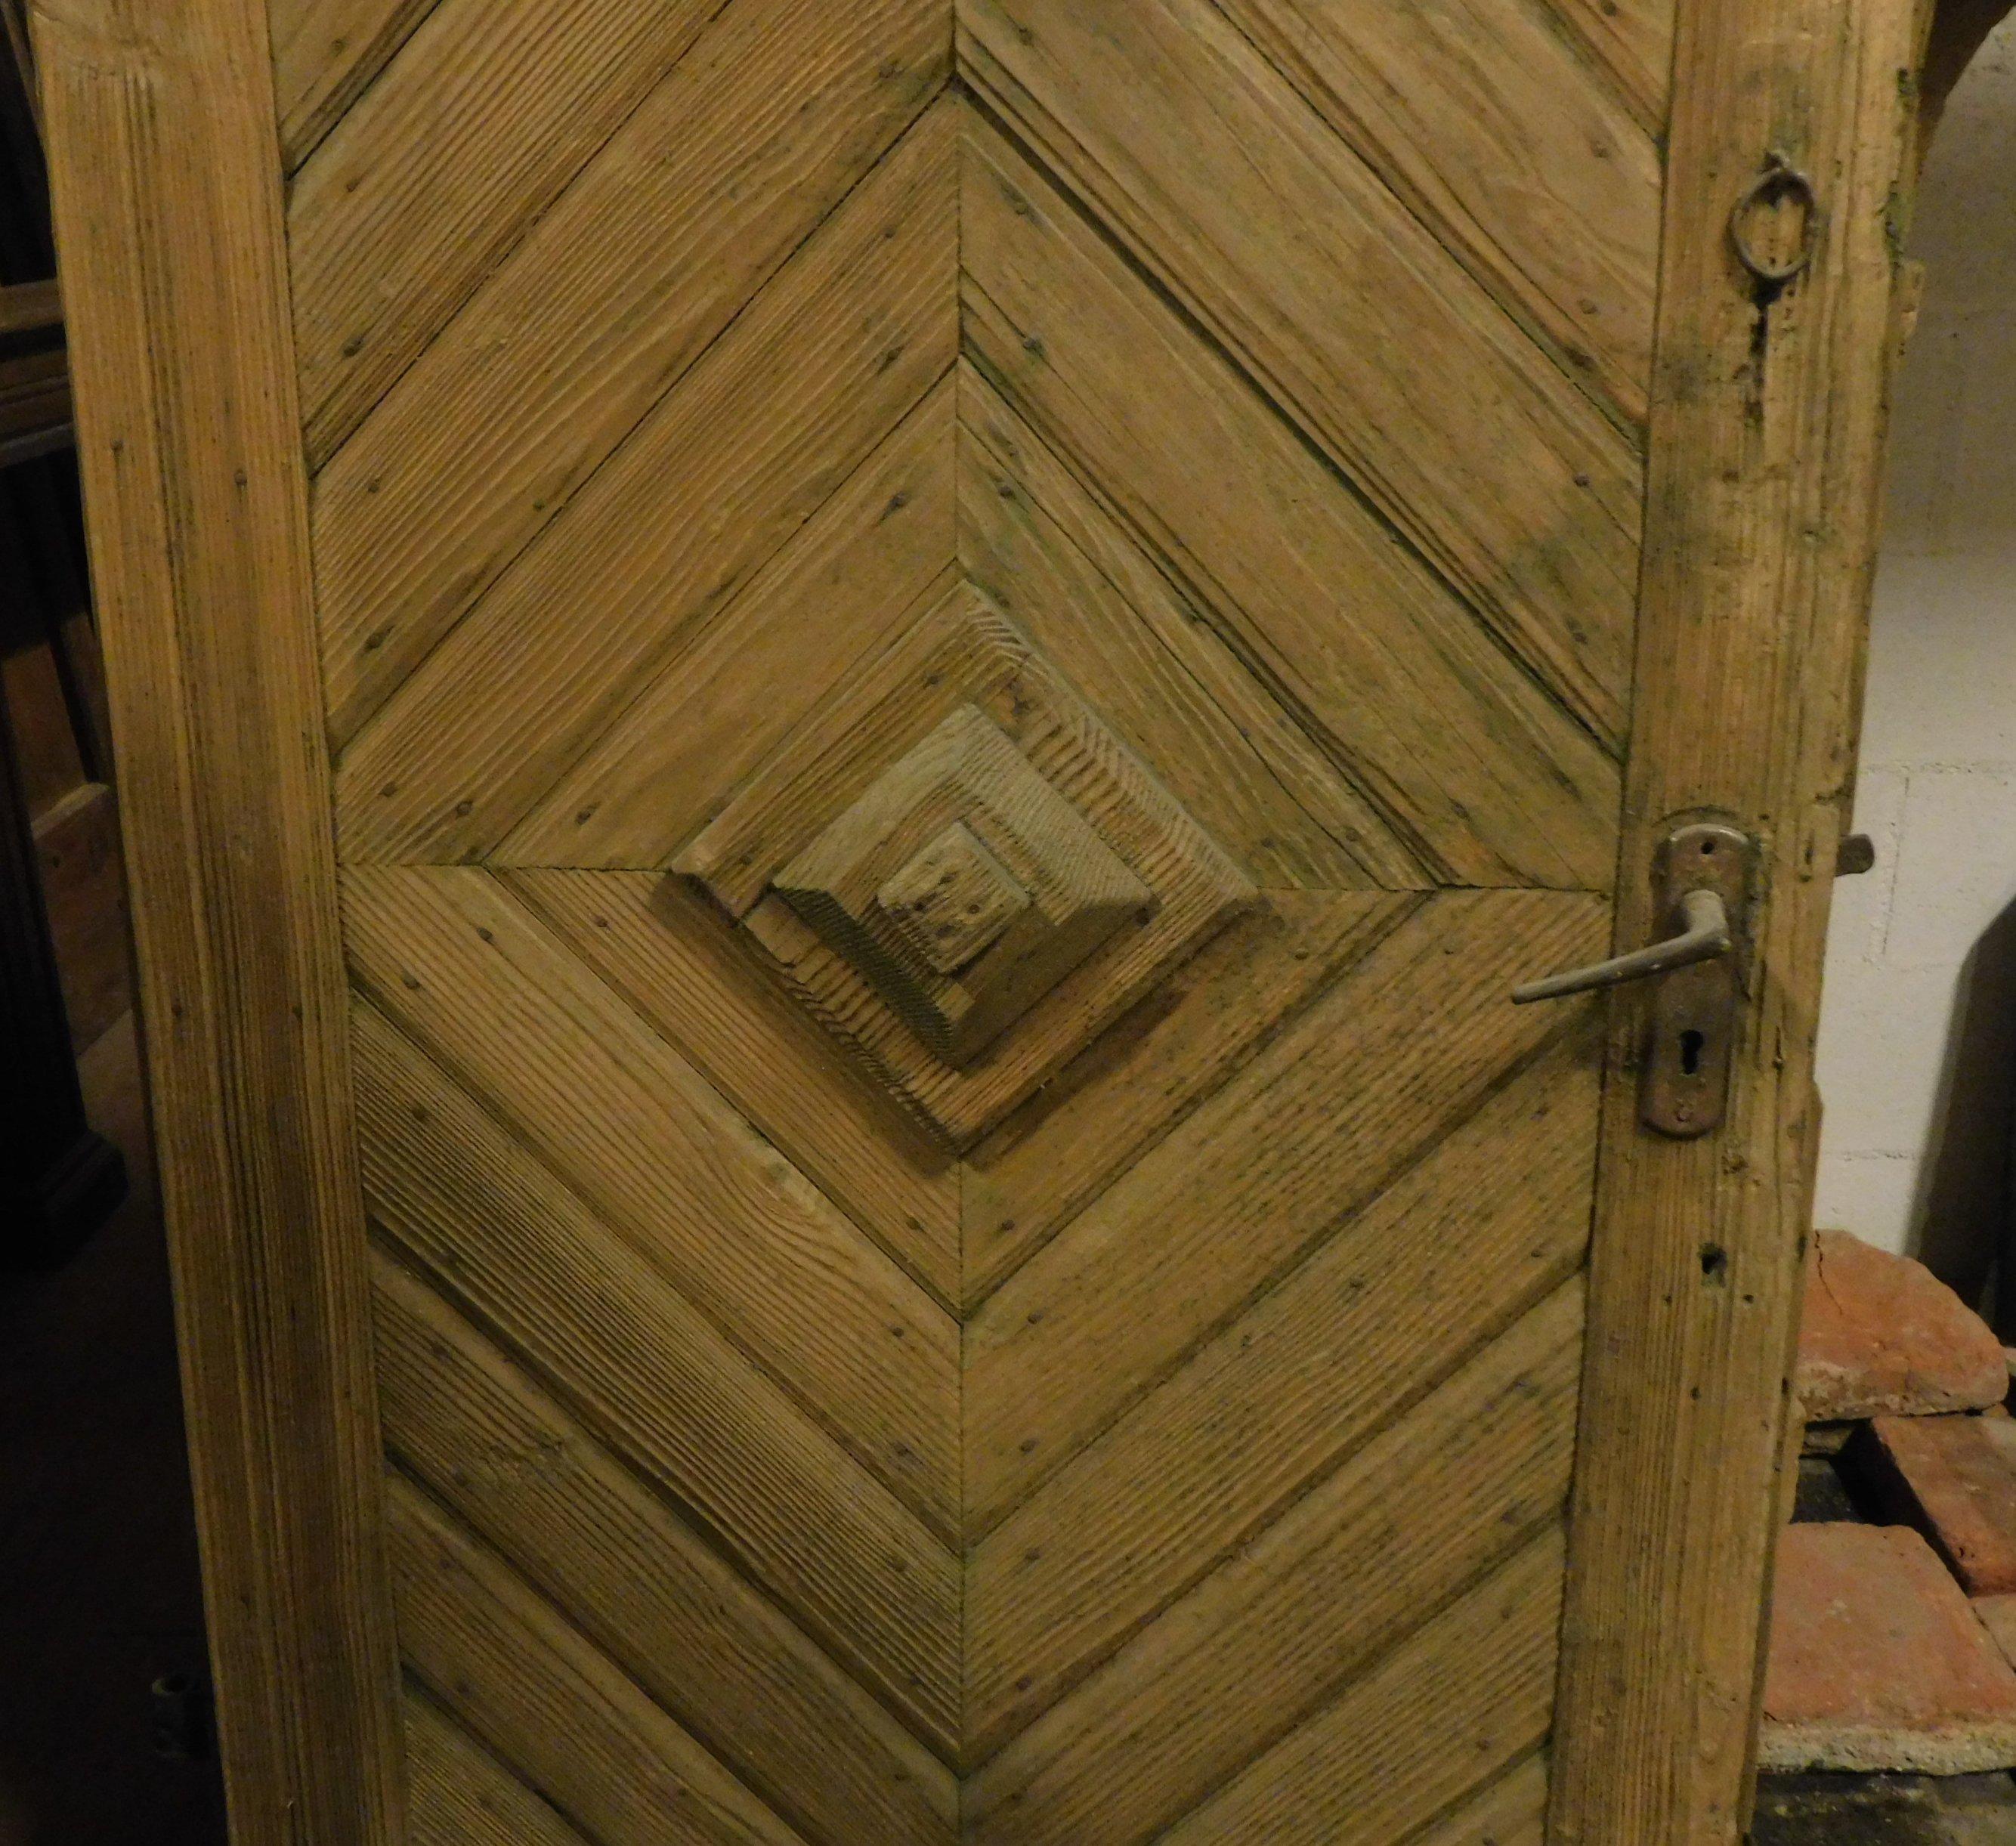 old rustic door